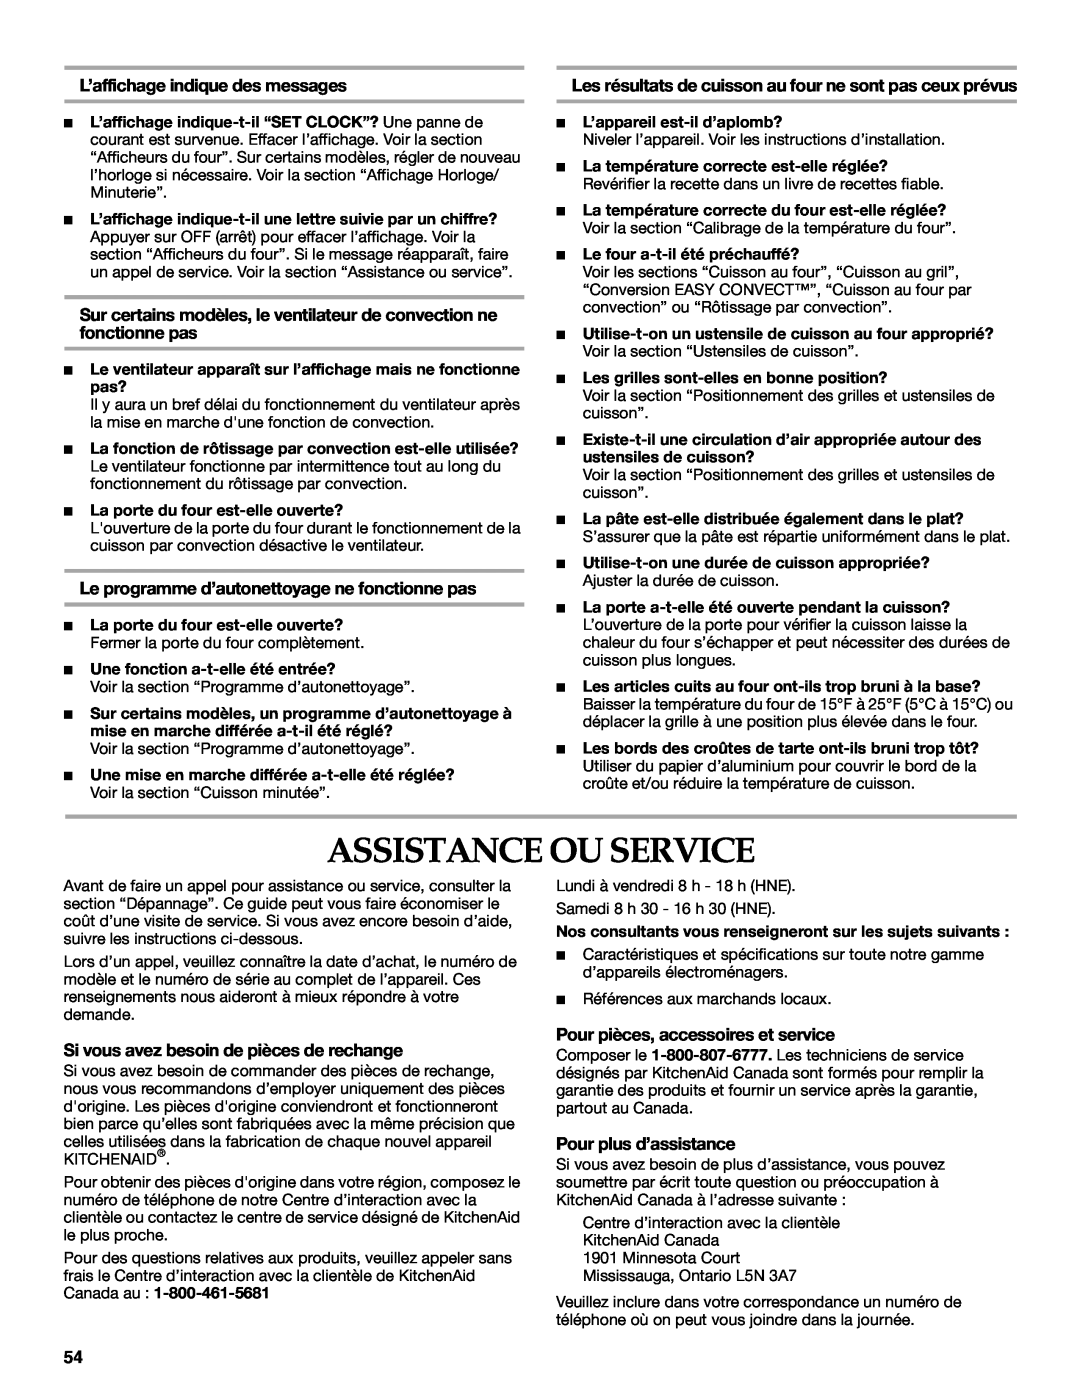 KitchenAid KGRI801 Assistance Ou Service, L’affichage indique des messages, Le programme d’autonettoyage ne fonctionne pas 